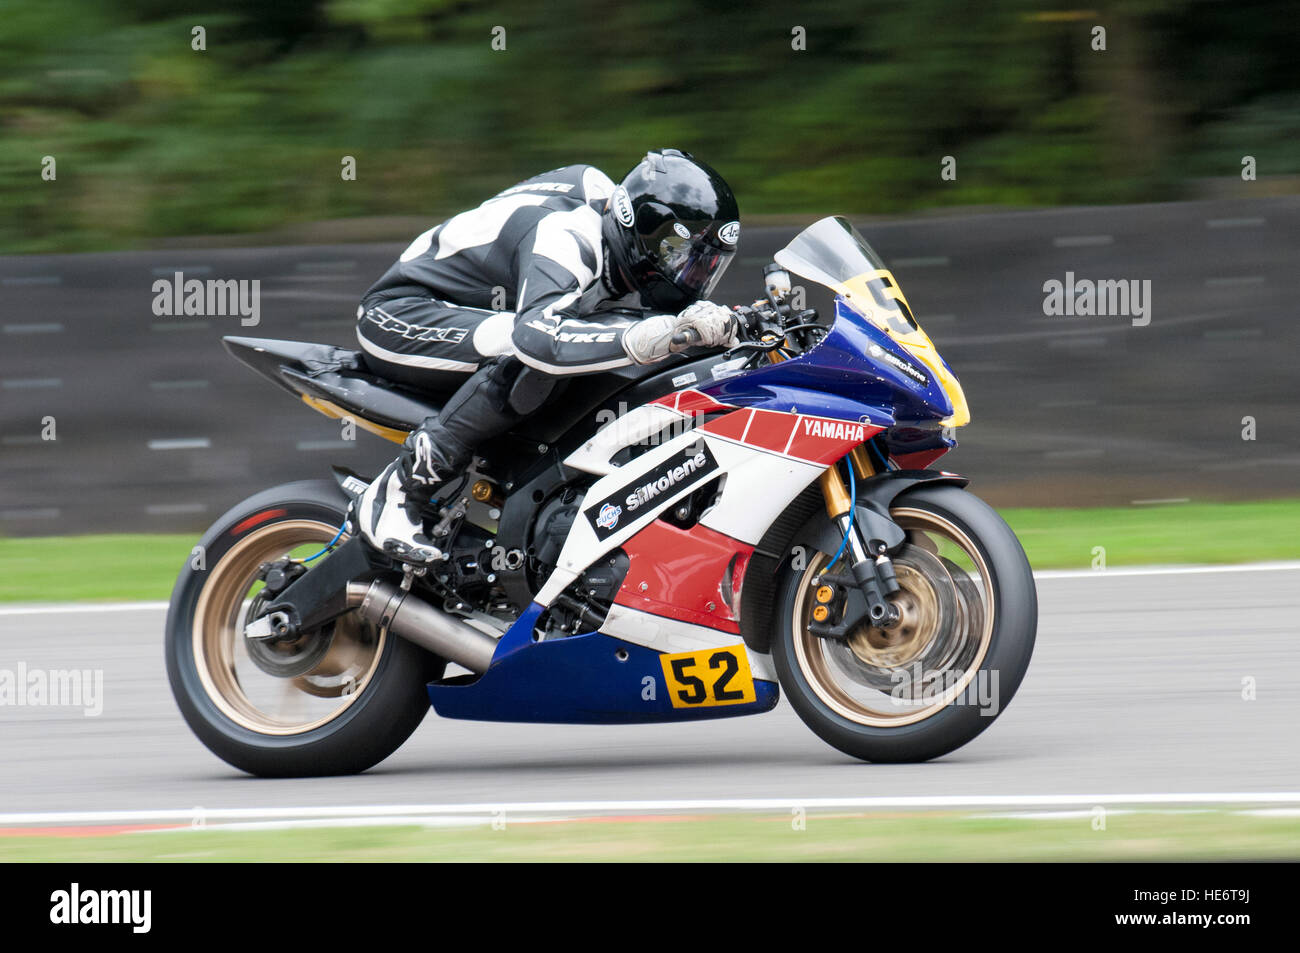 motorcycle racing Stock Photo